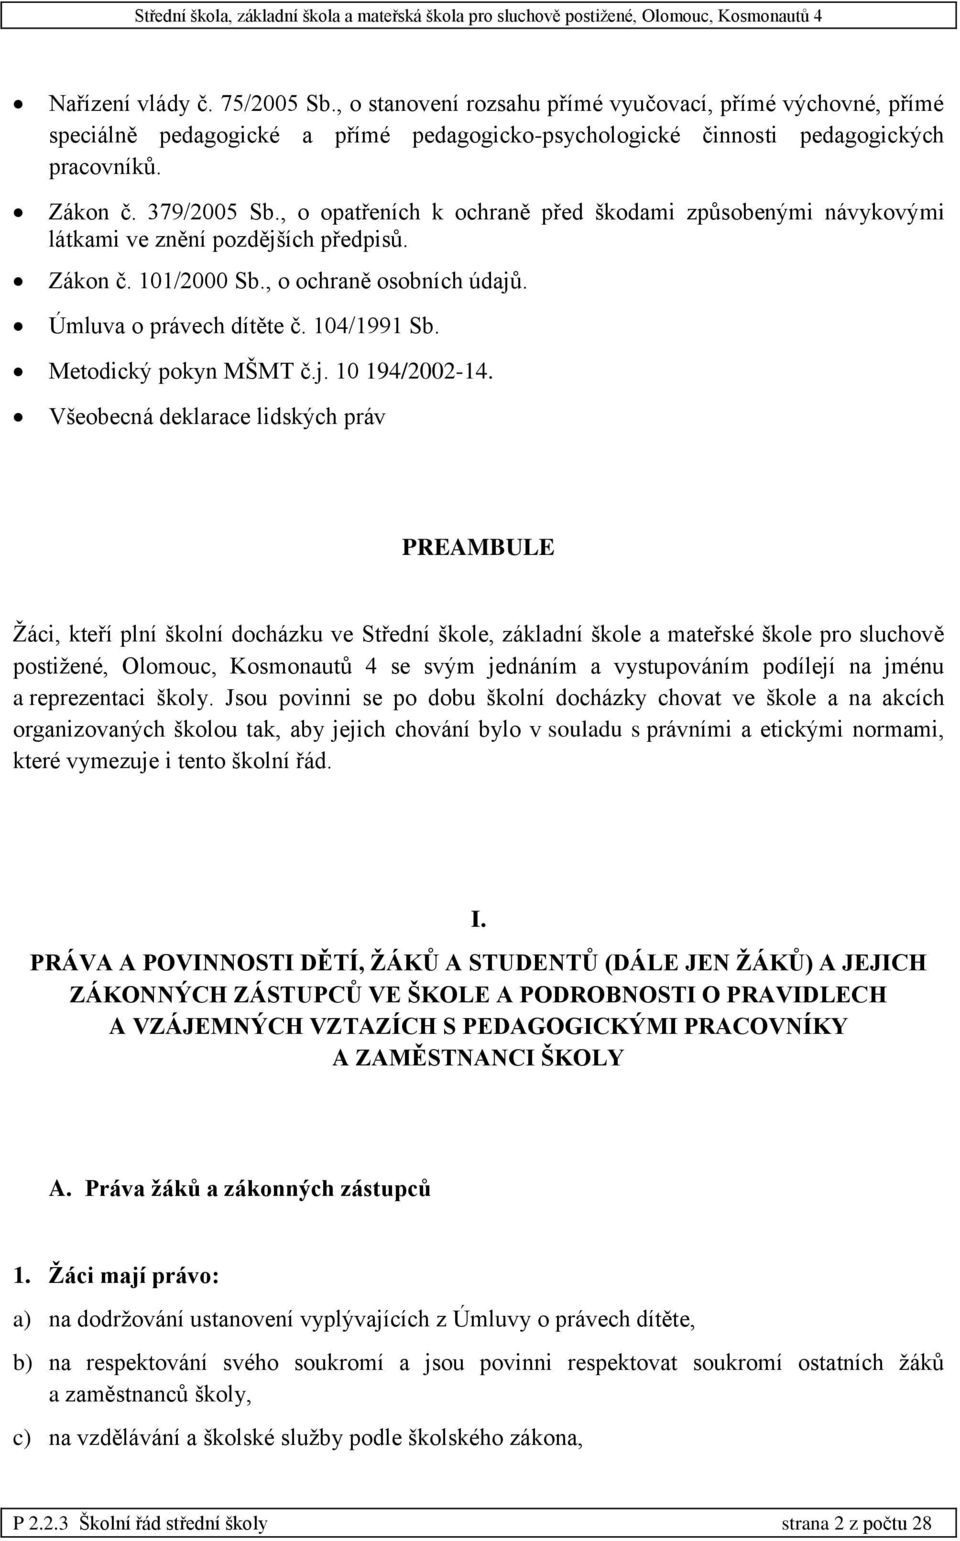 Metodický pokyn MŠMT č.j. 10 194/2002-14.